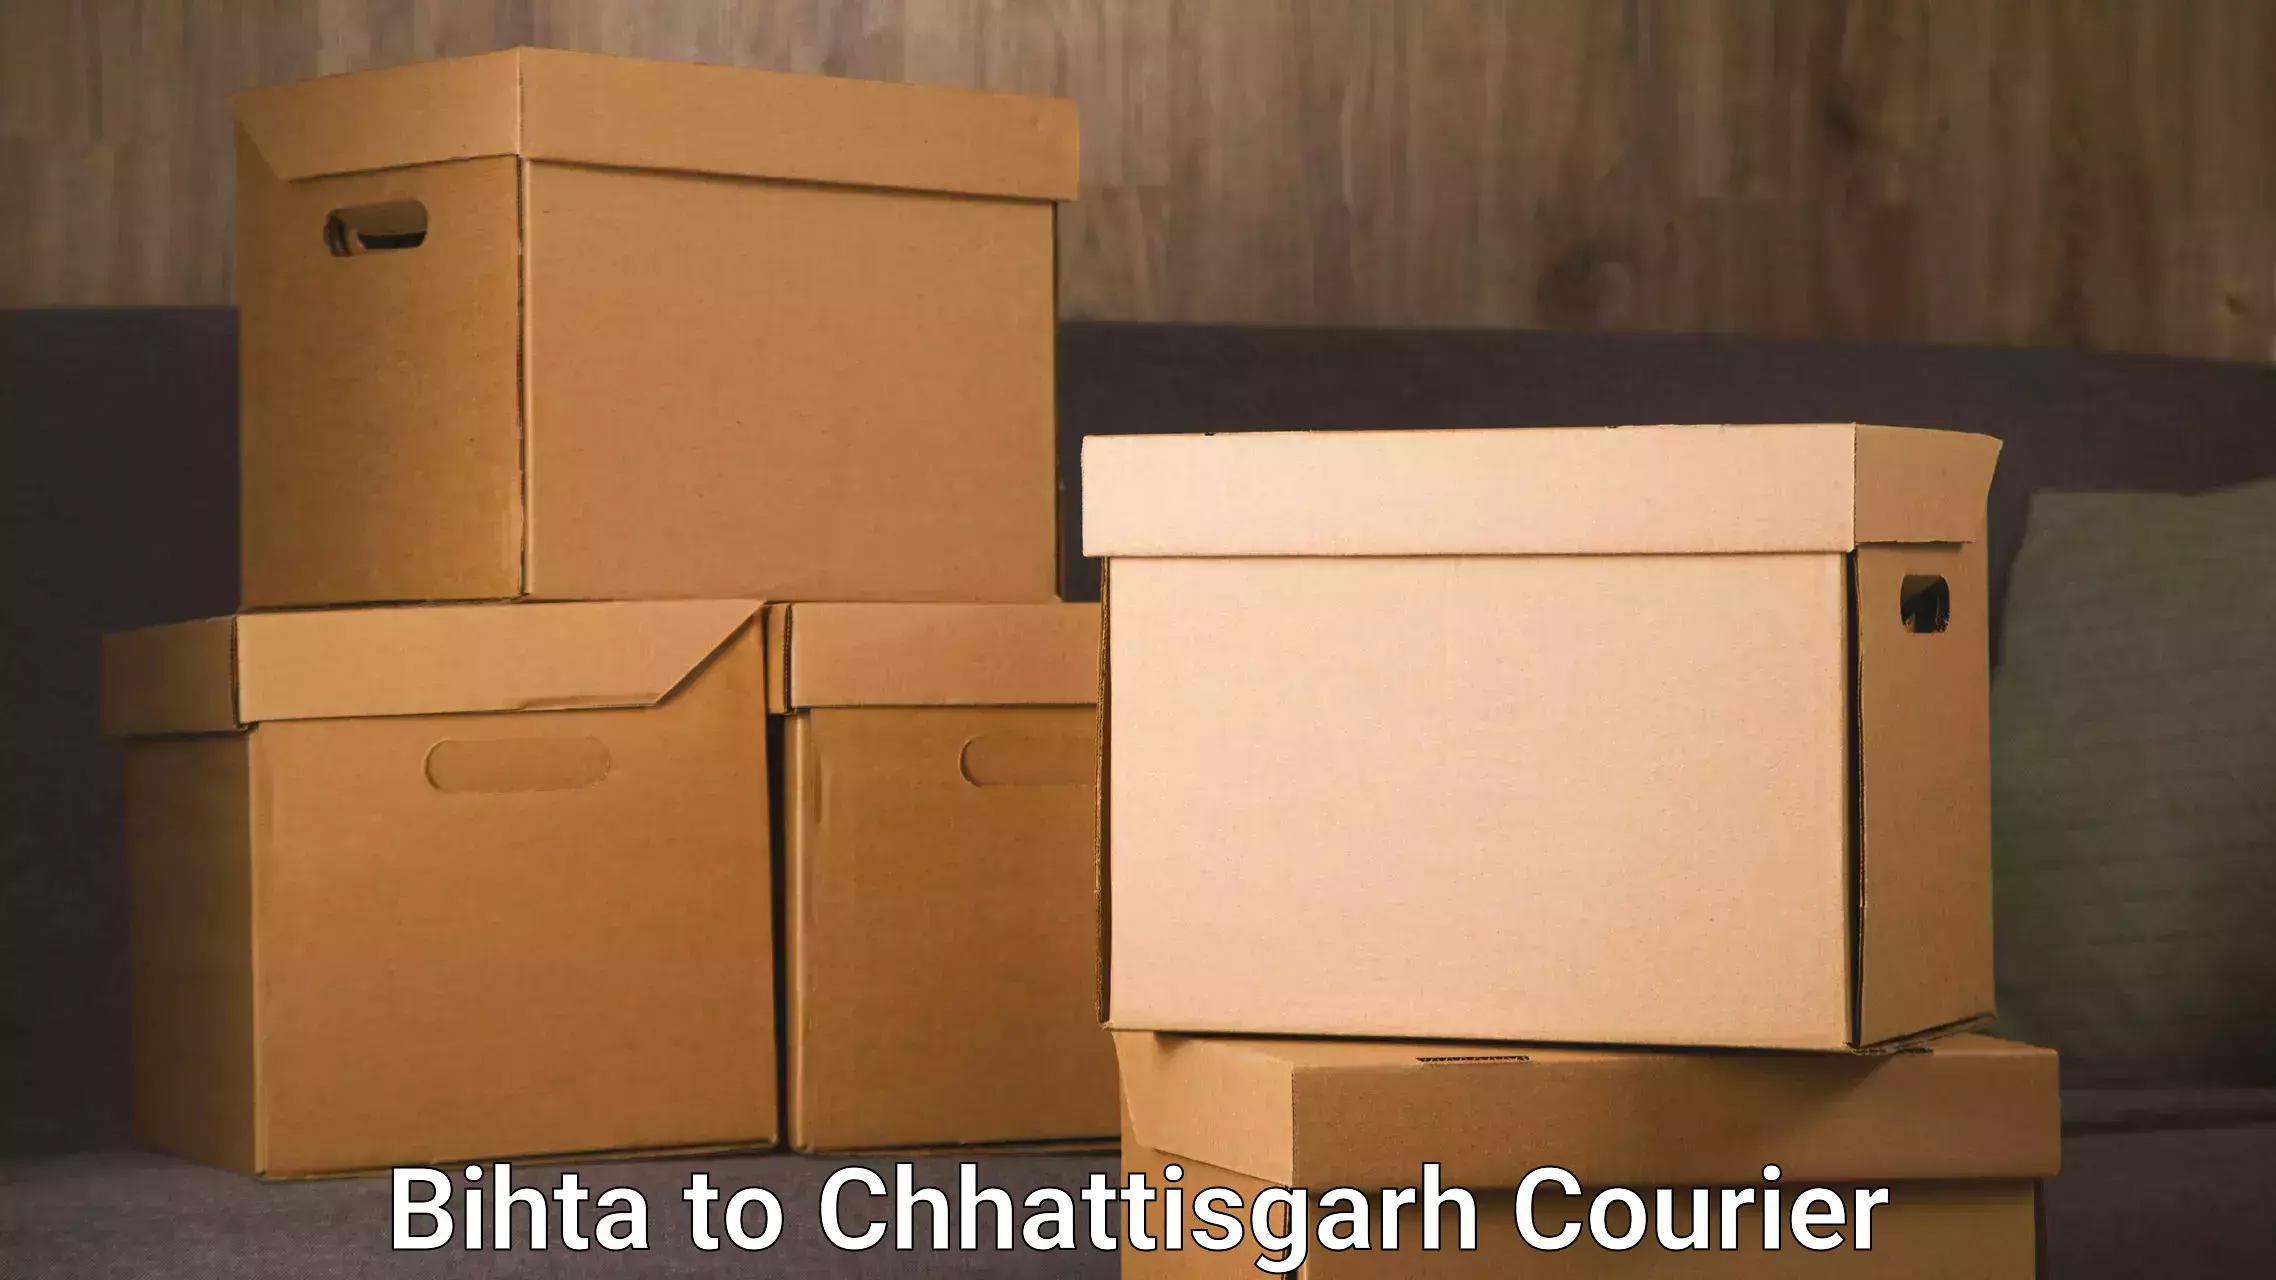 Full-service movers in Bihta to Chhattisgarh